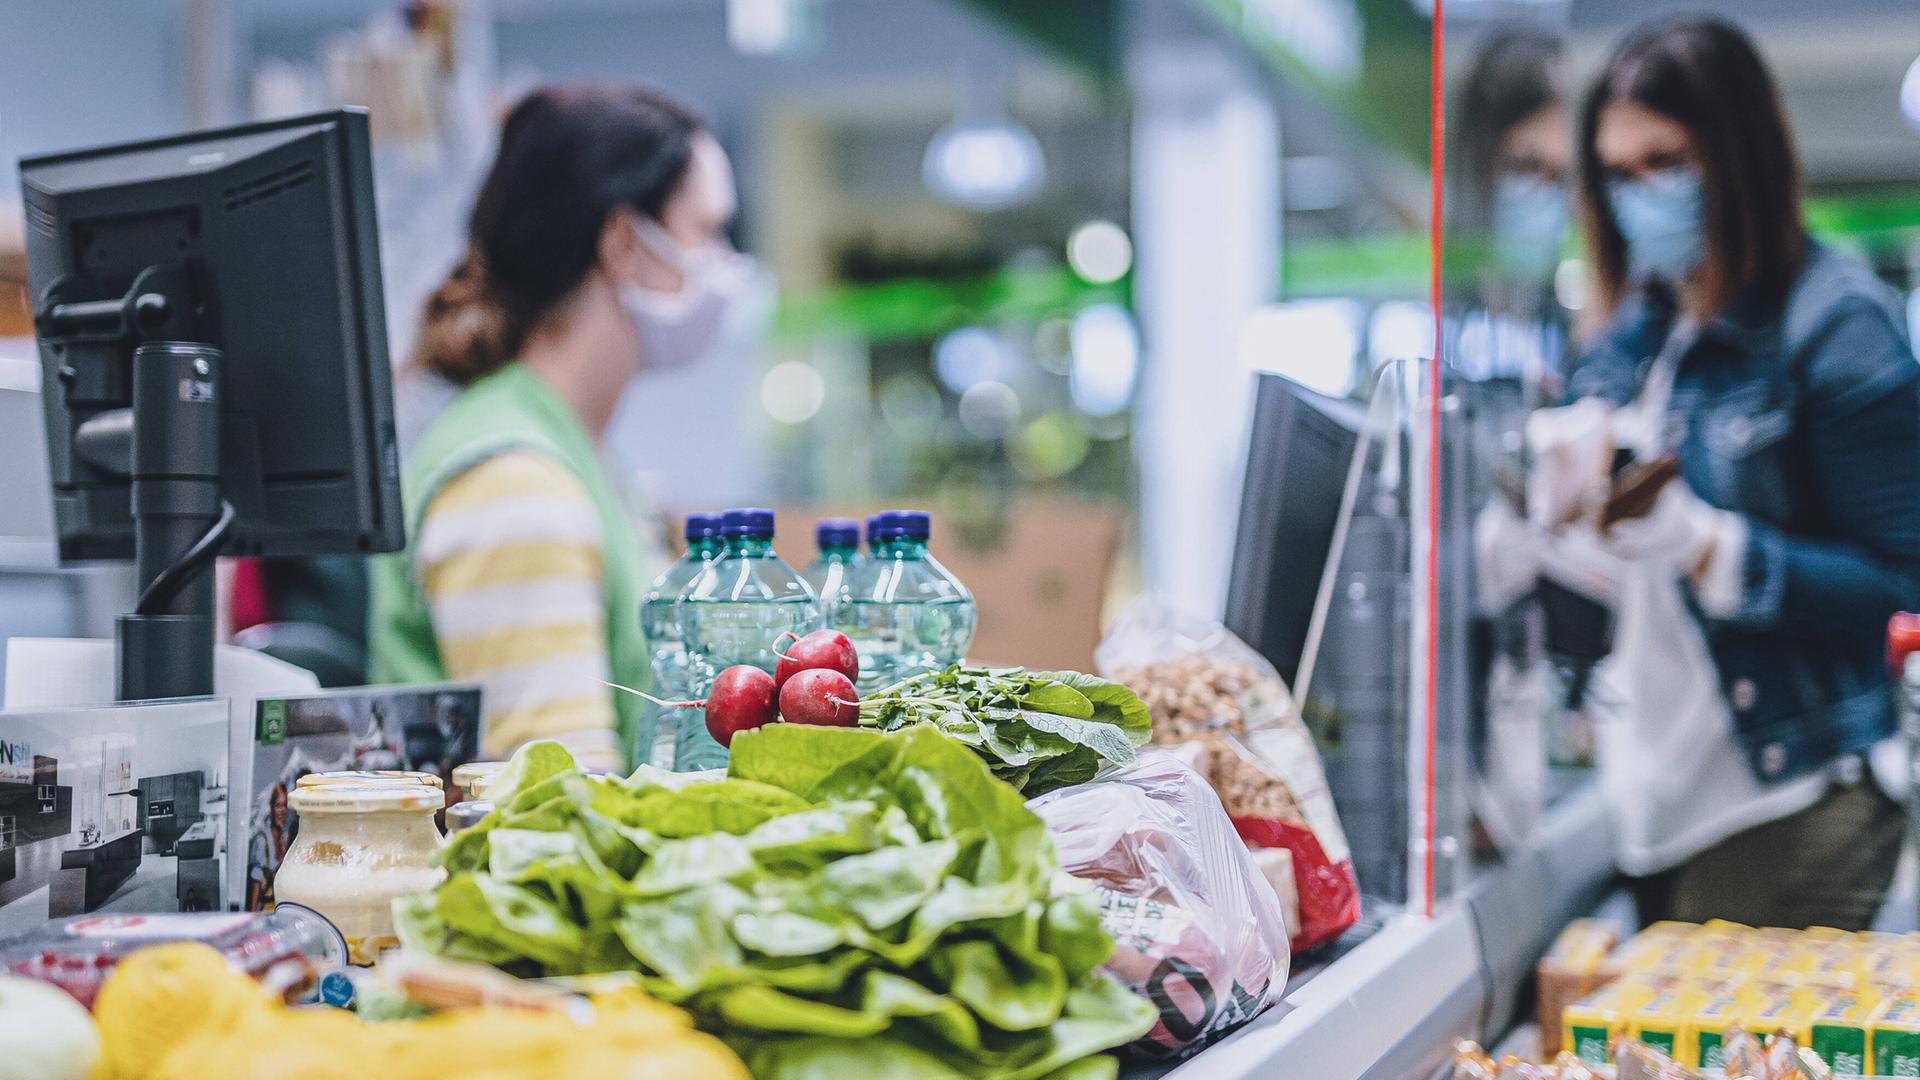 Eine Frau trägt eine Schutzmaske und Handschuhe bei ihrem Einkauf in einem Supermarkt, während sie an der Kasse bezahlt.